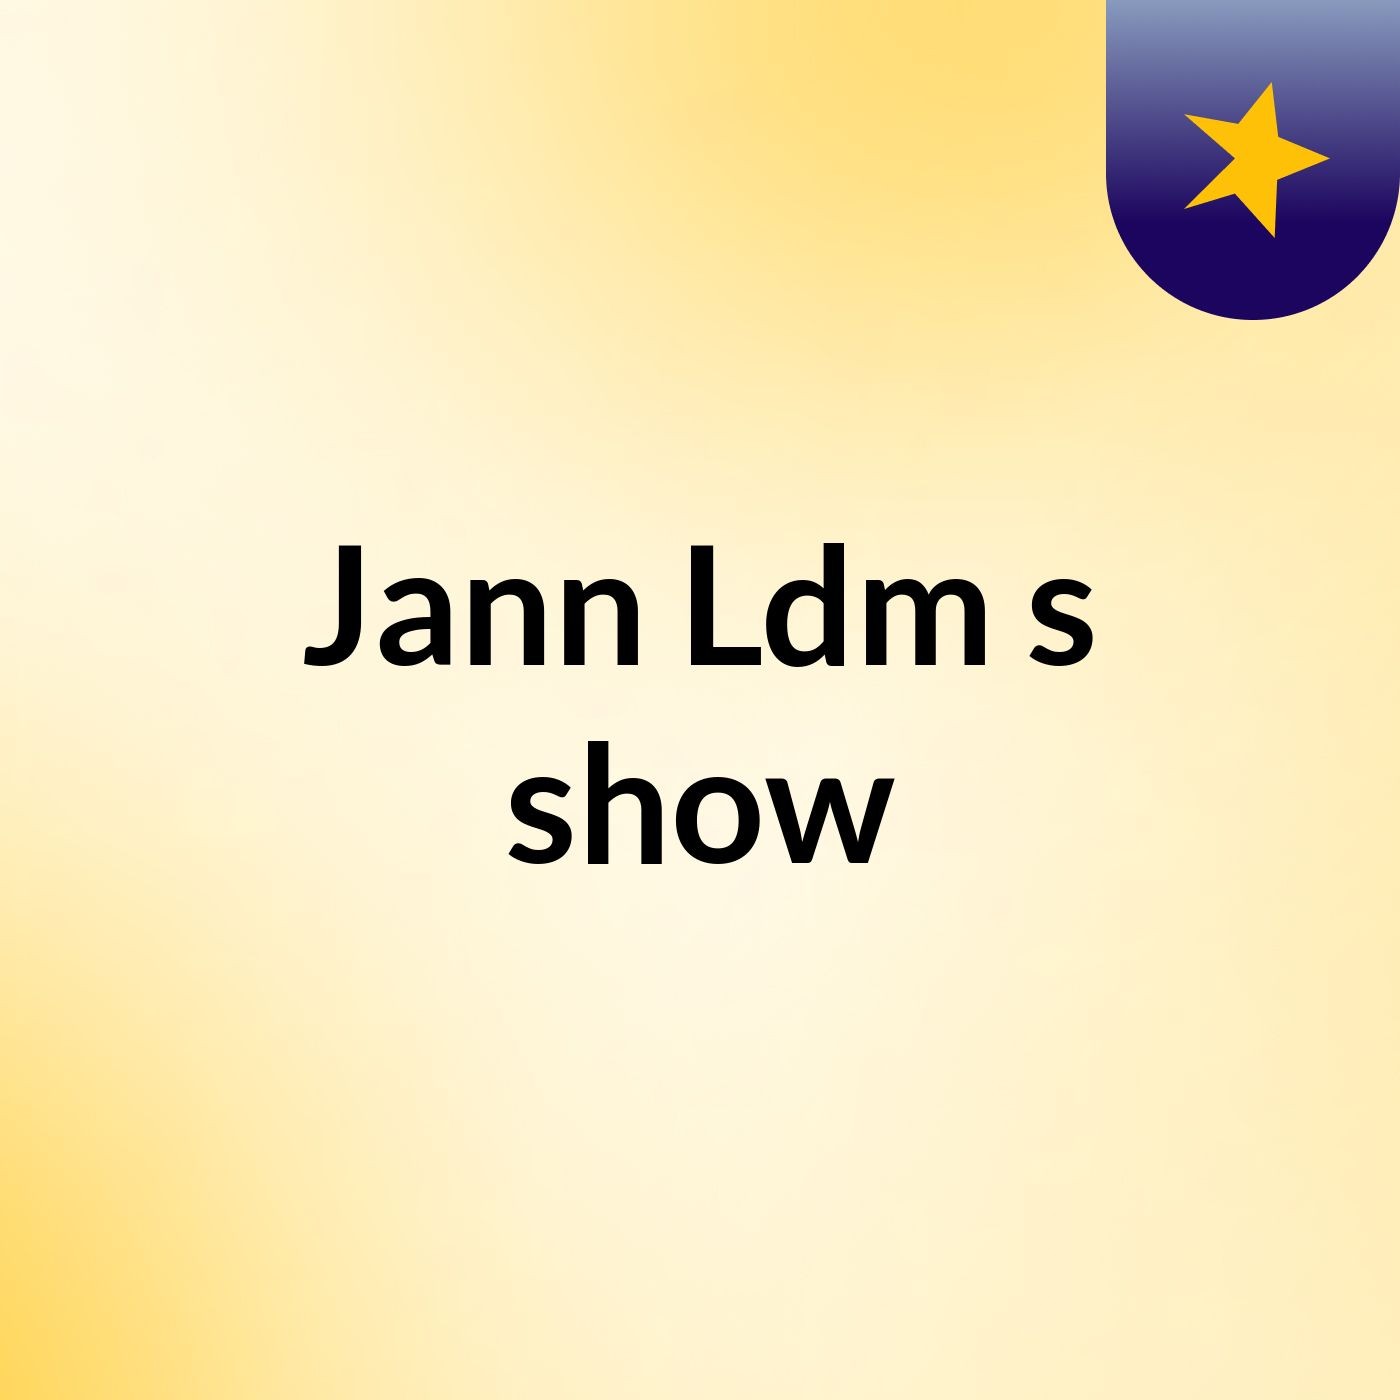 Jann Ldm's show